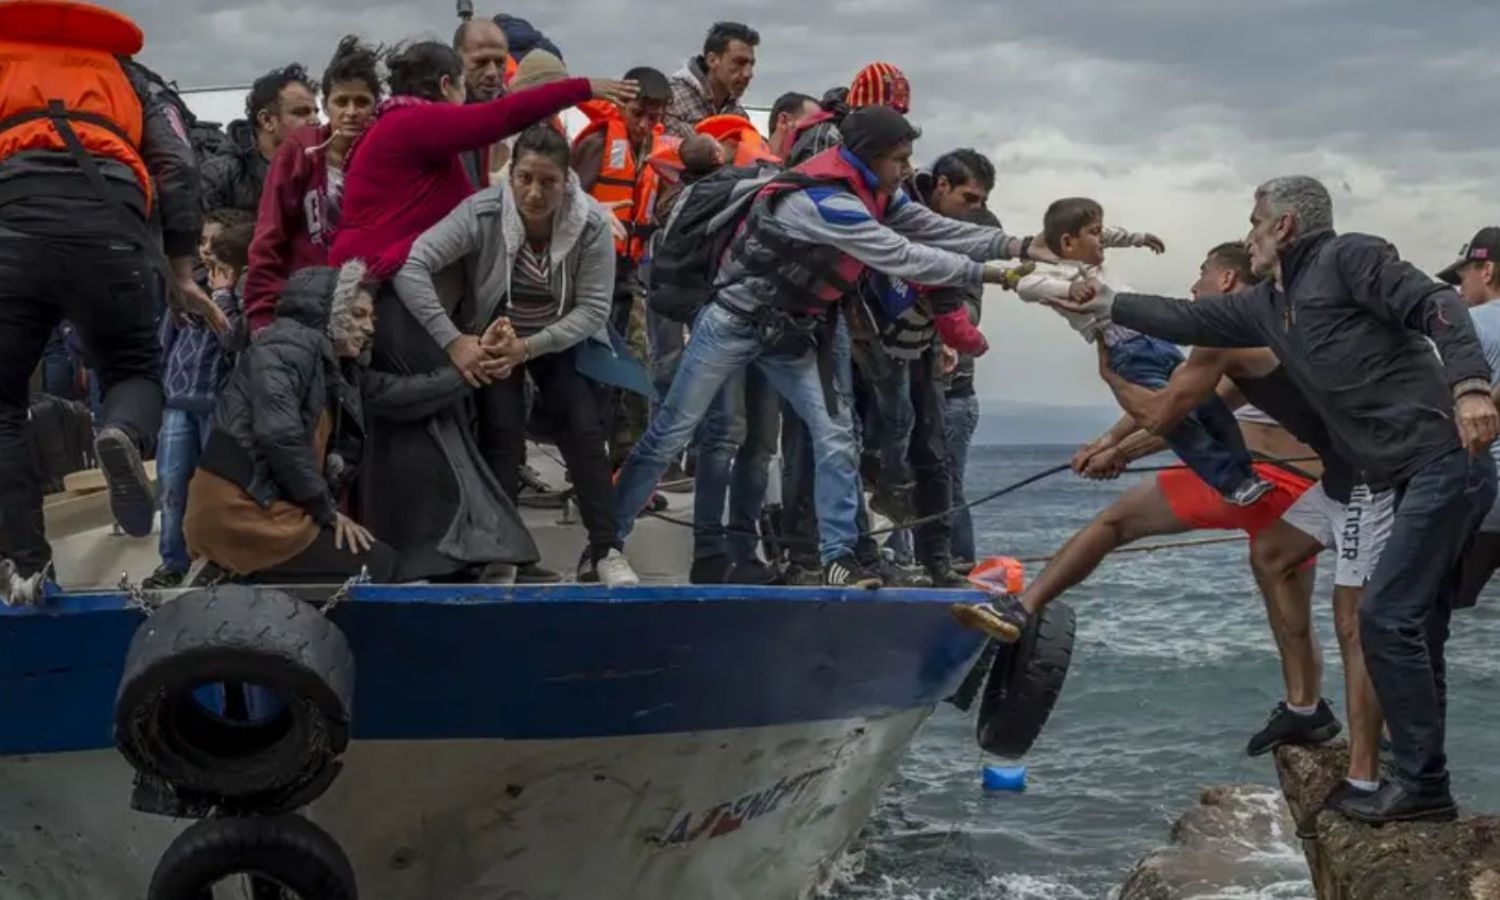 camera iconلاجئون يصلون إلى جزيرة ليسبوس اليونانية على متن قارب صيد (picture-alliance)